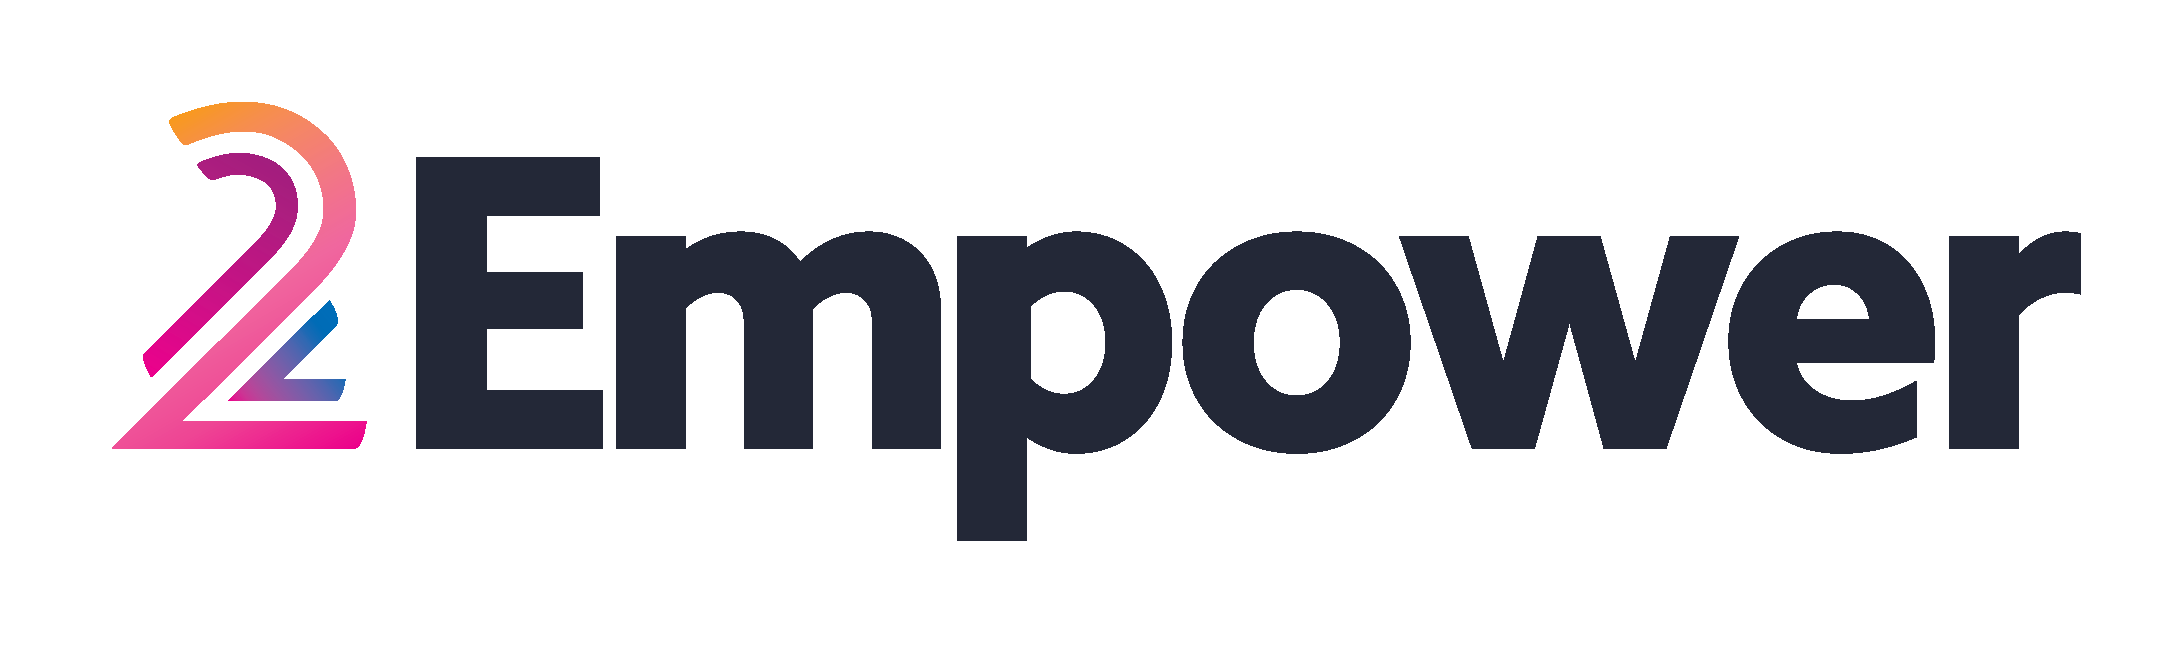 Logo 2empower, groupe média orienté étudiant